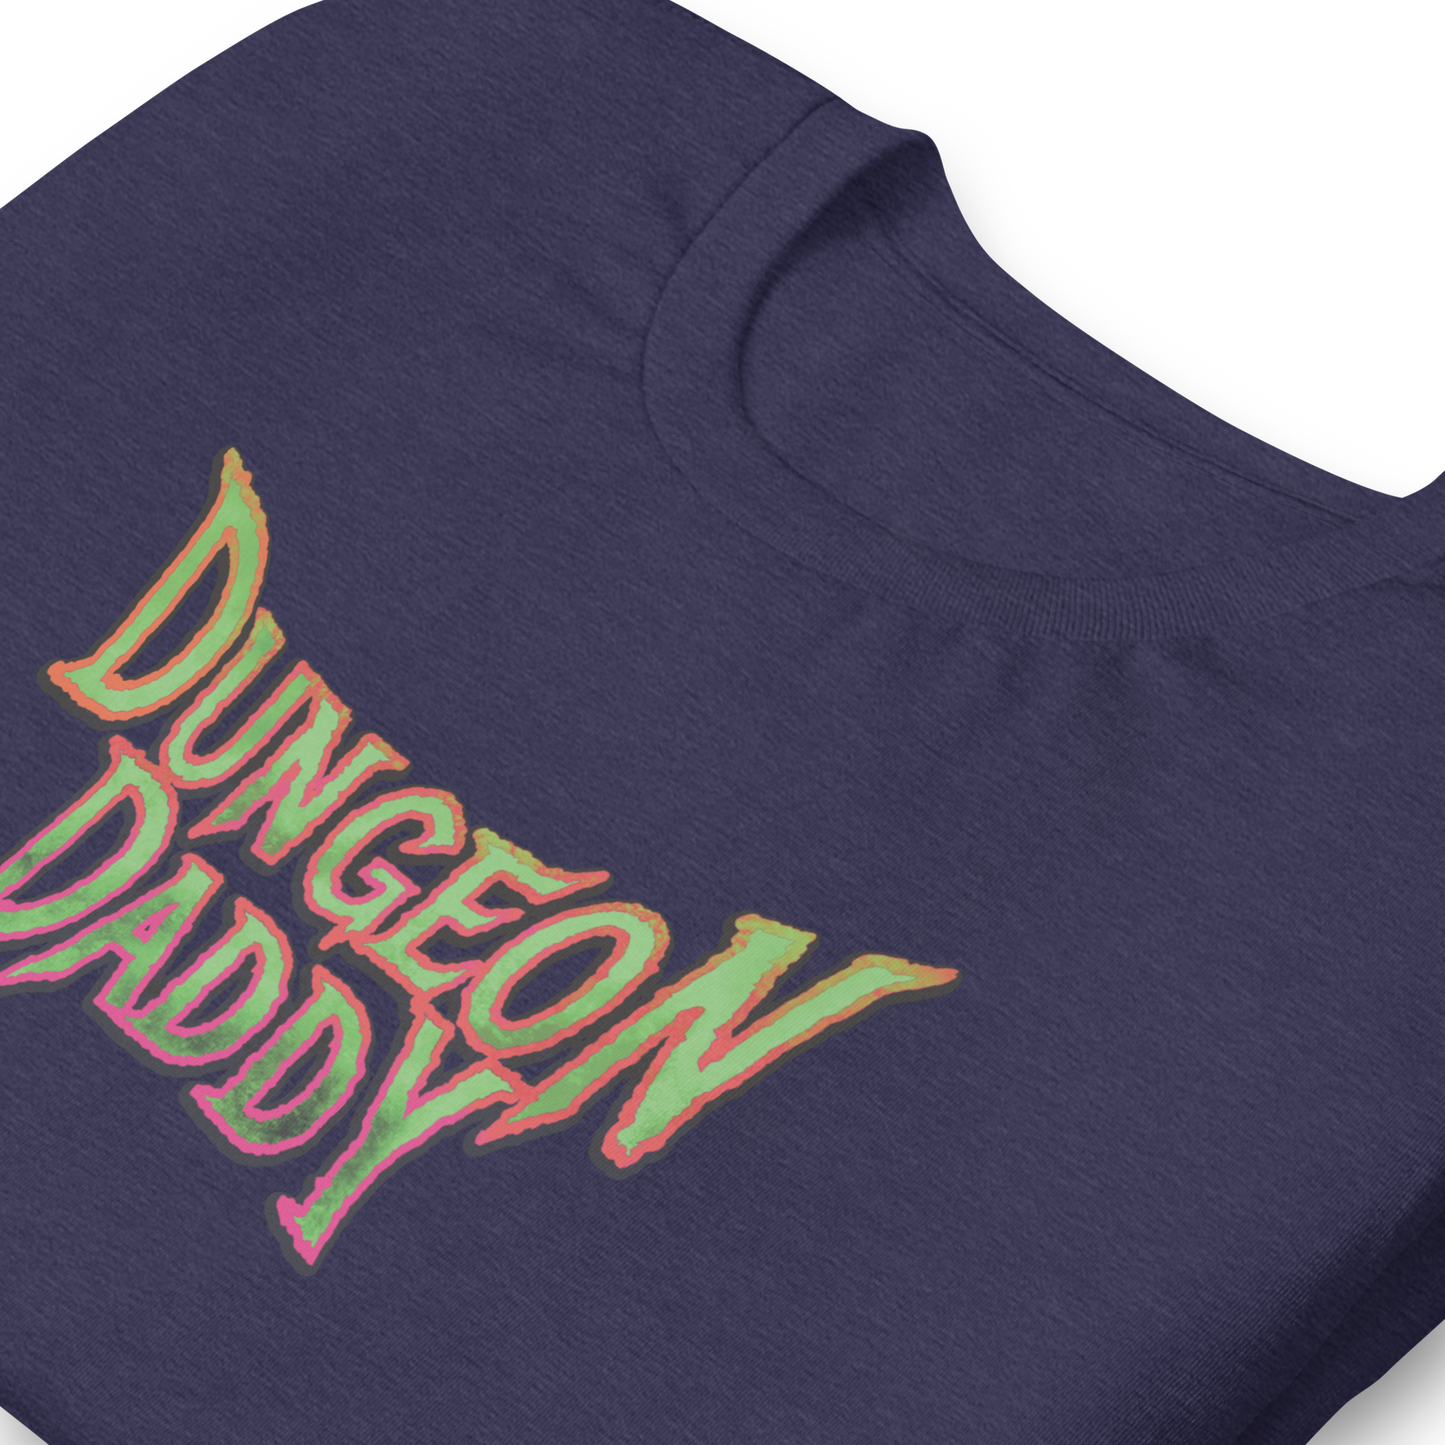 Dungeon Daddy Shirt